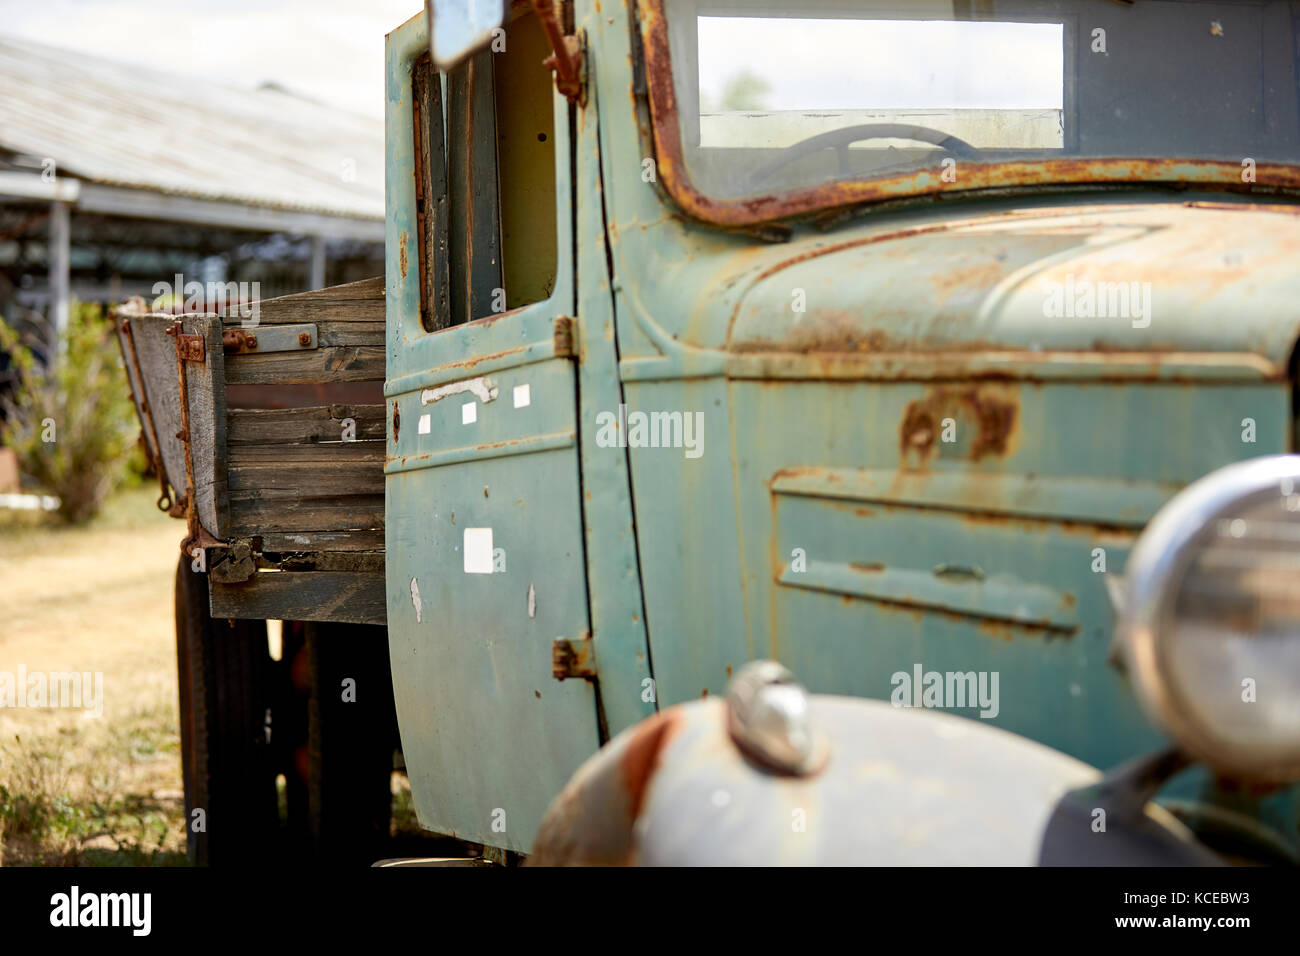 Old rusty green truck avec côtés en bois Banque D'Images